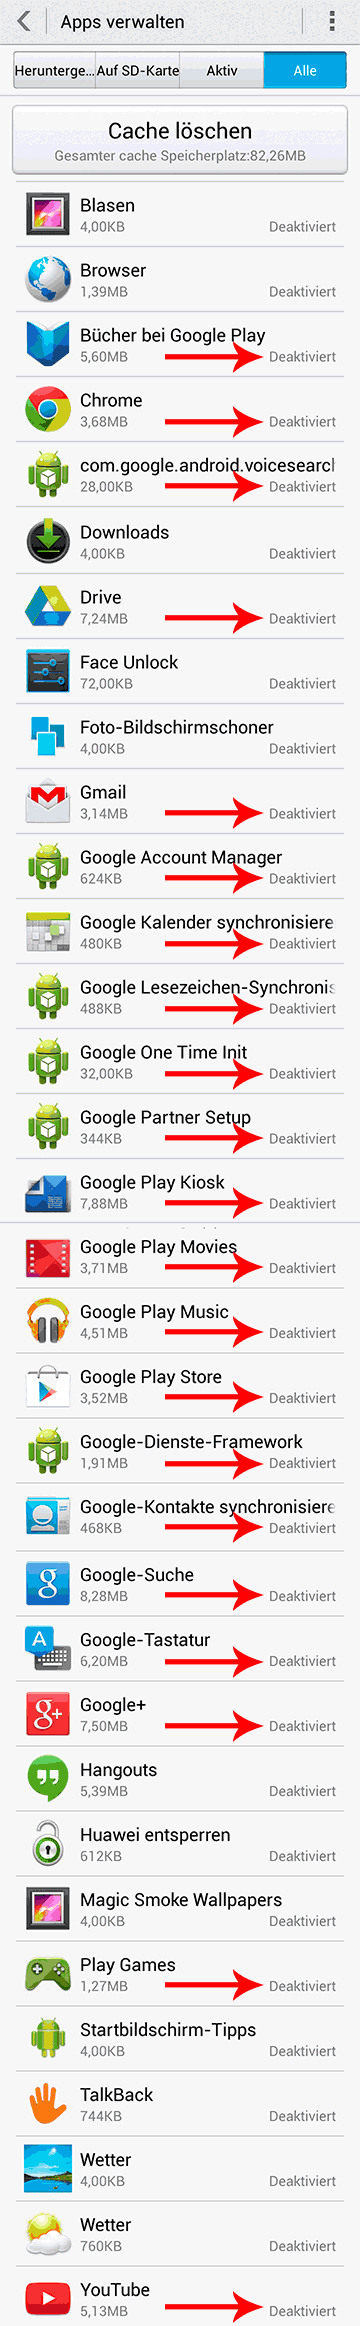 deaktivierte Google-Apps